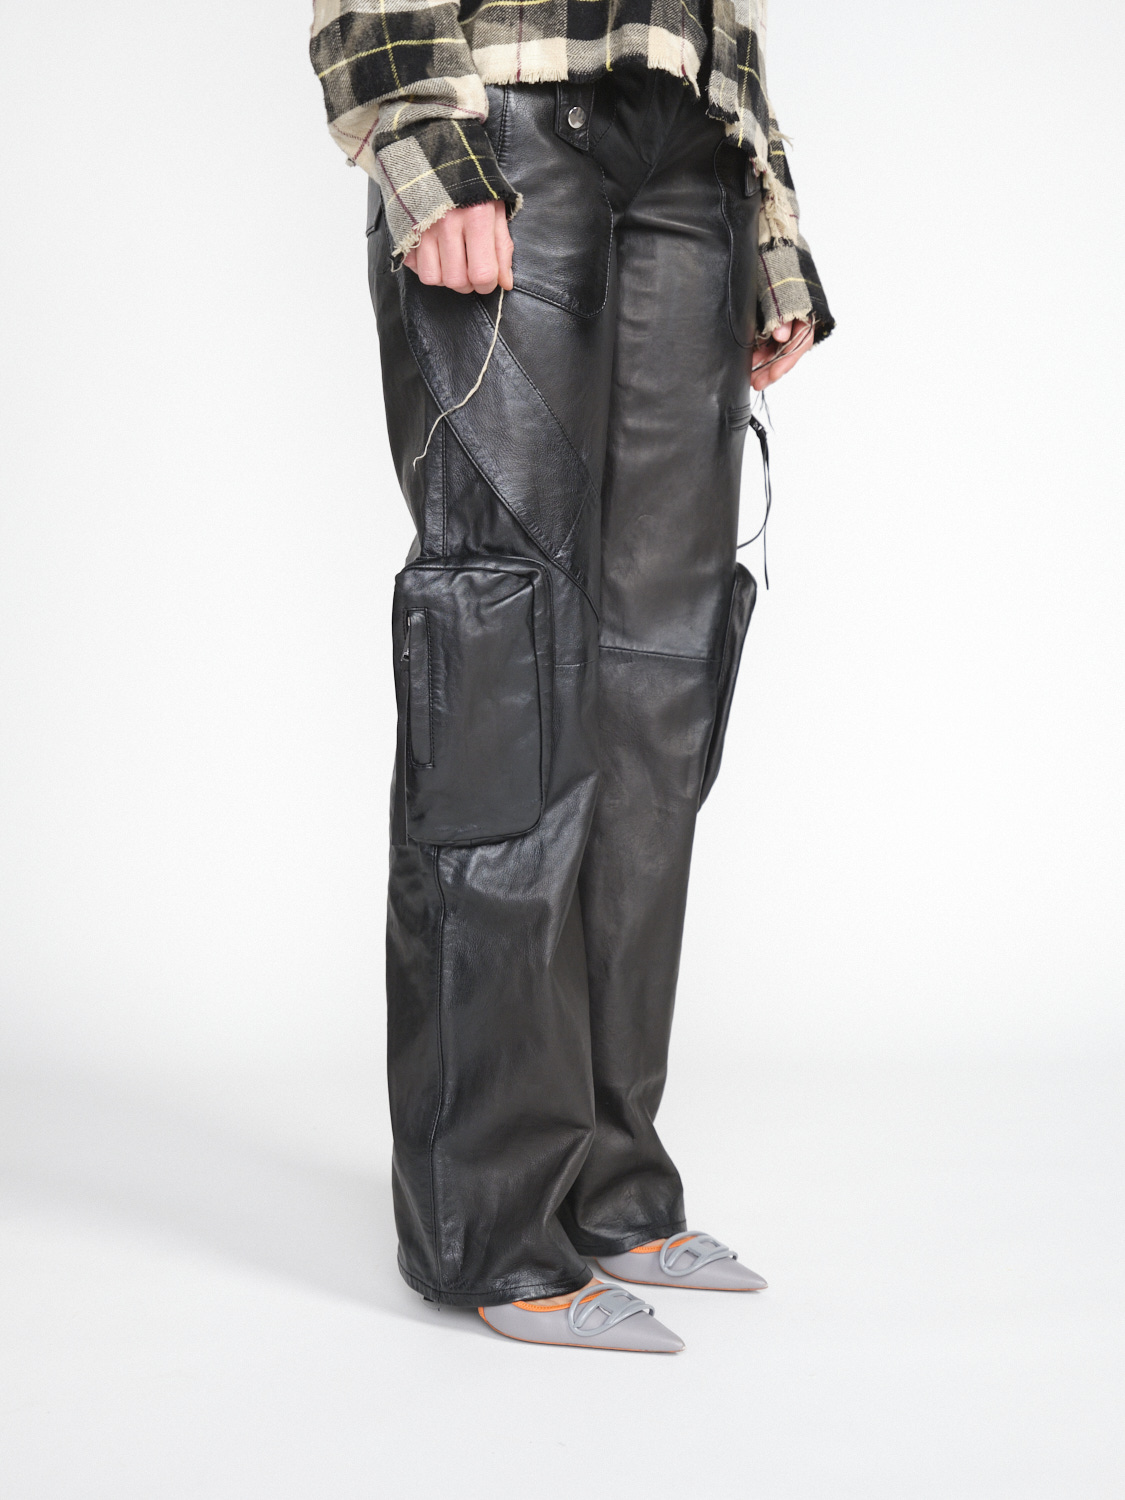 Blumarine Pantalone Pelle - Pantalon en cuir avec des détails de motard schwarz 34